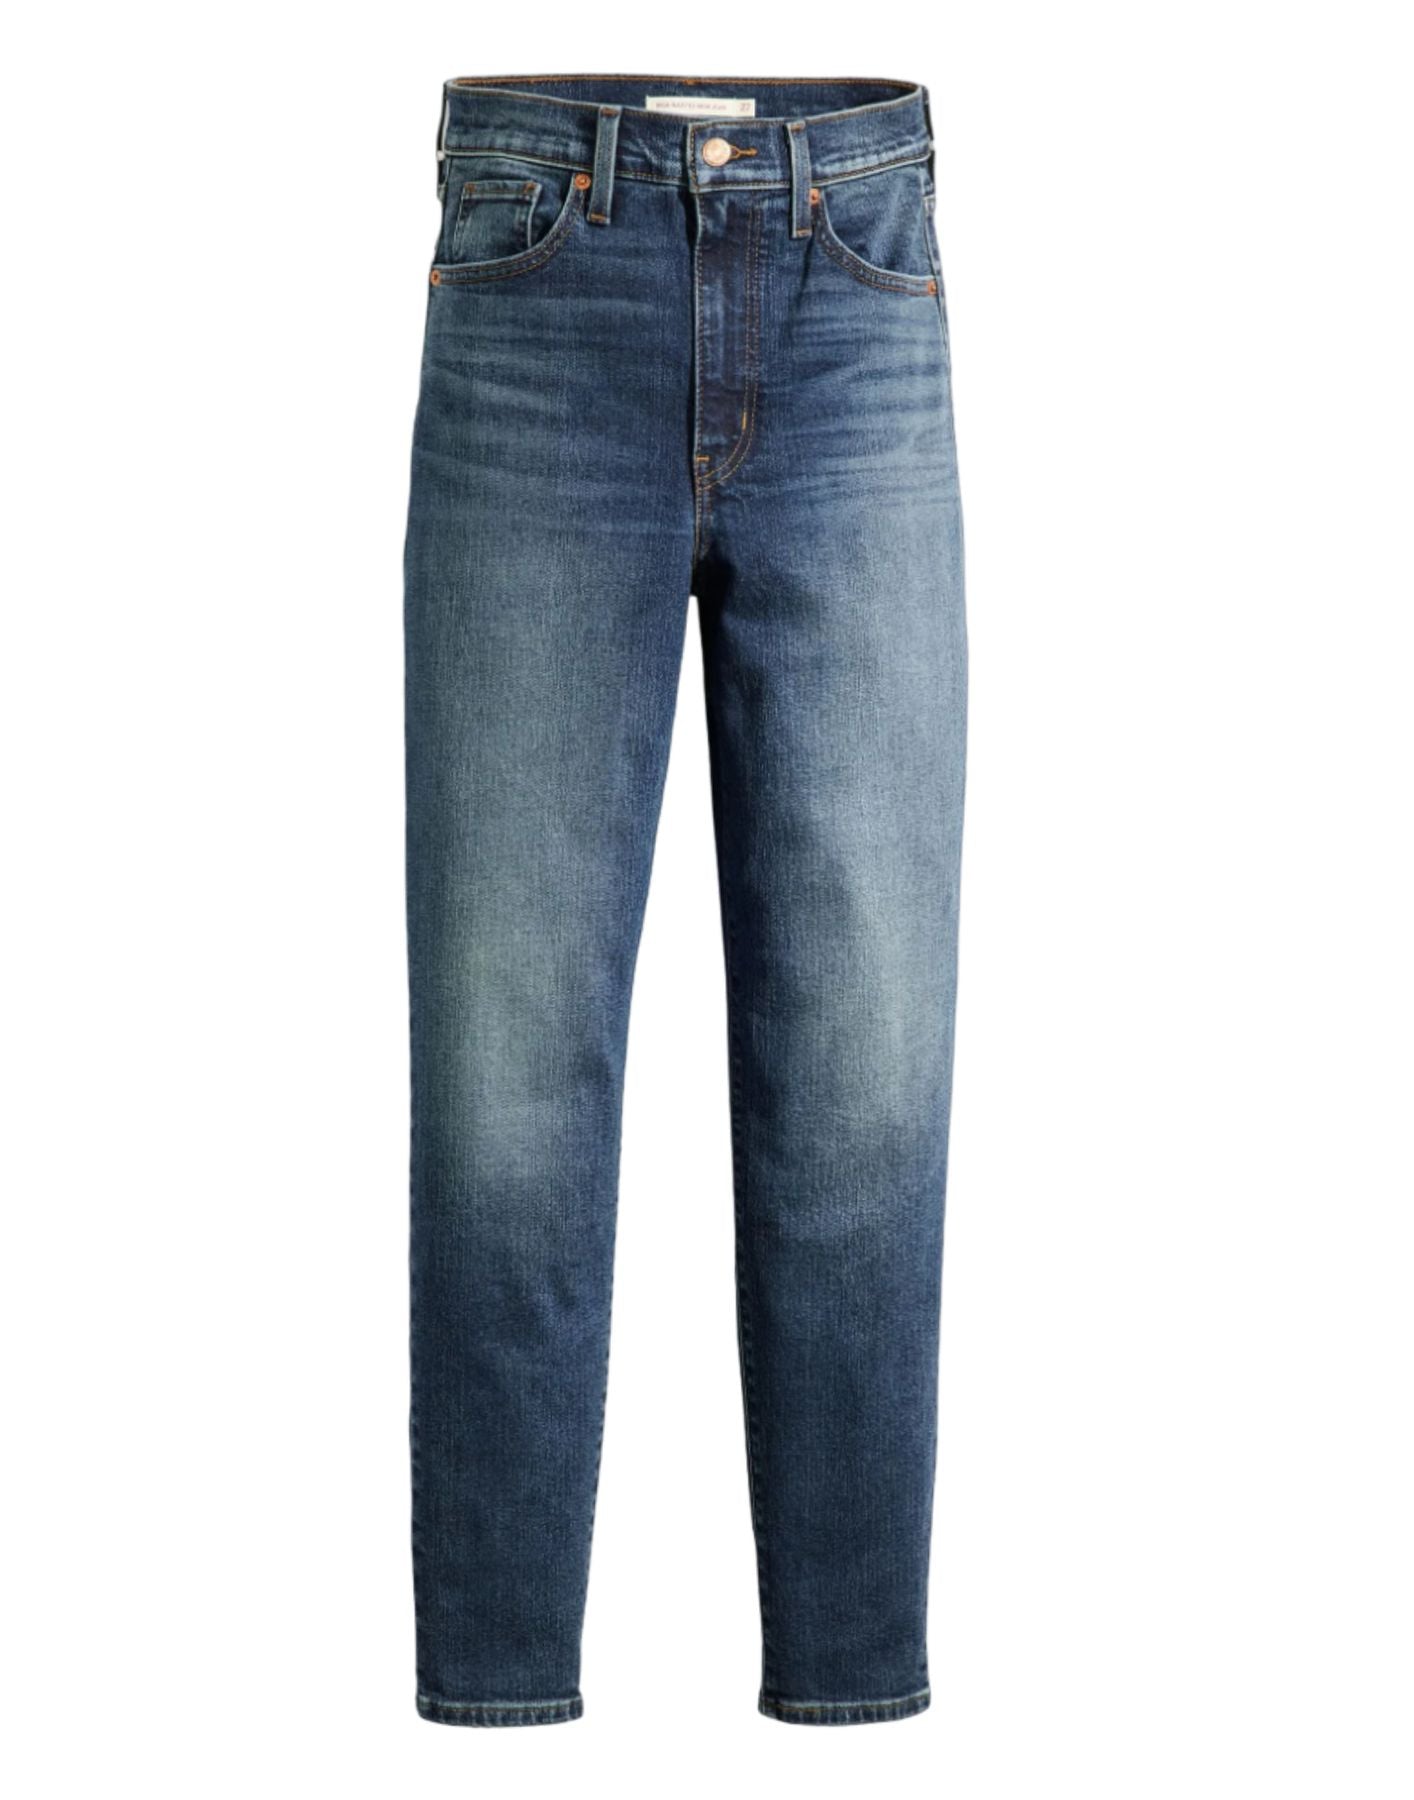 Jeans Woman A35060015 Levi's